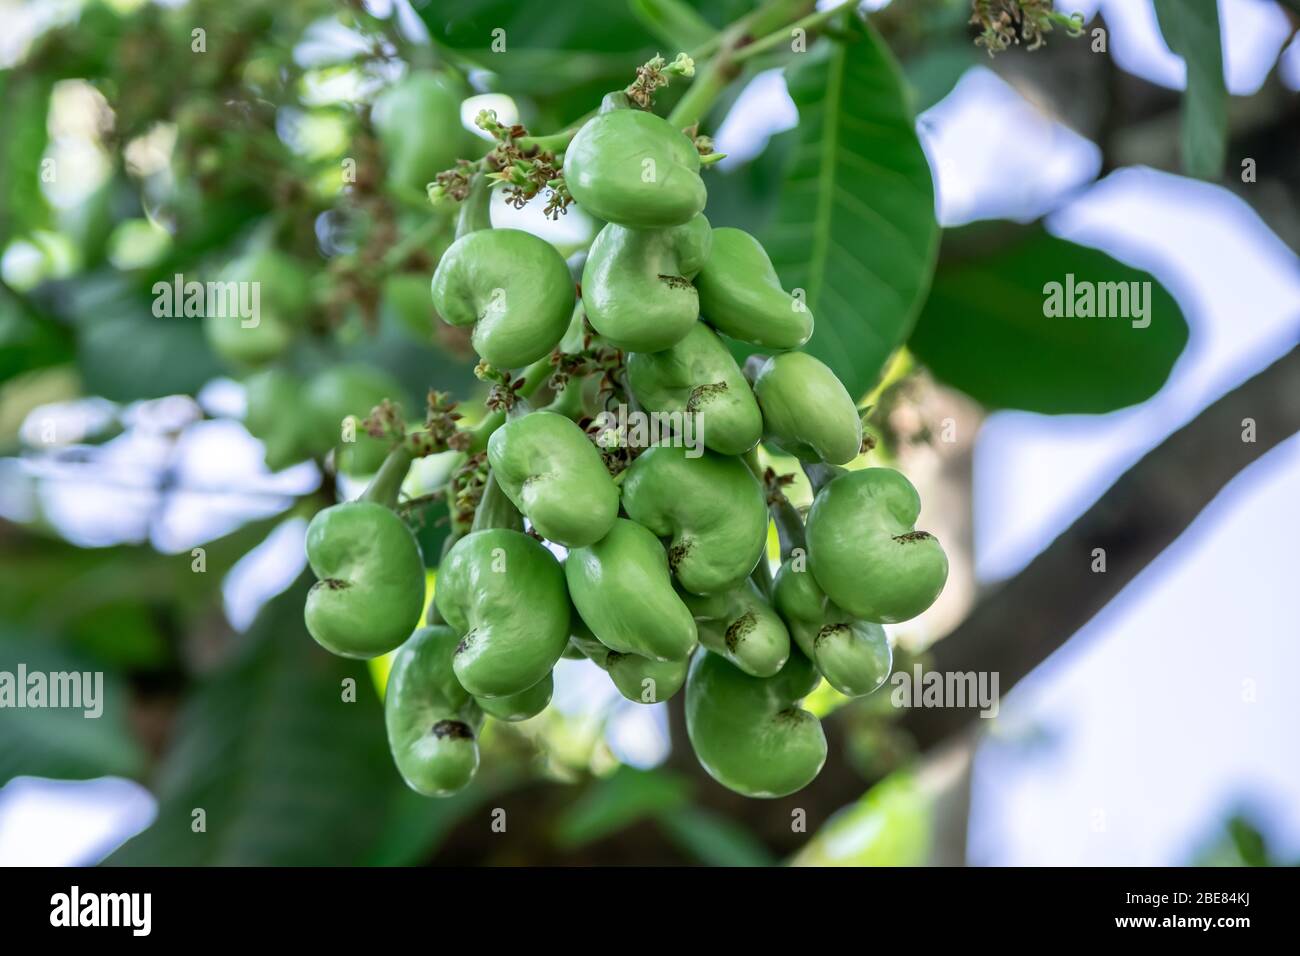 cashew nut tree images